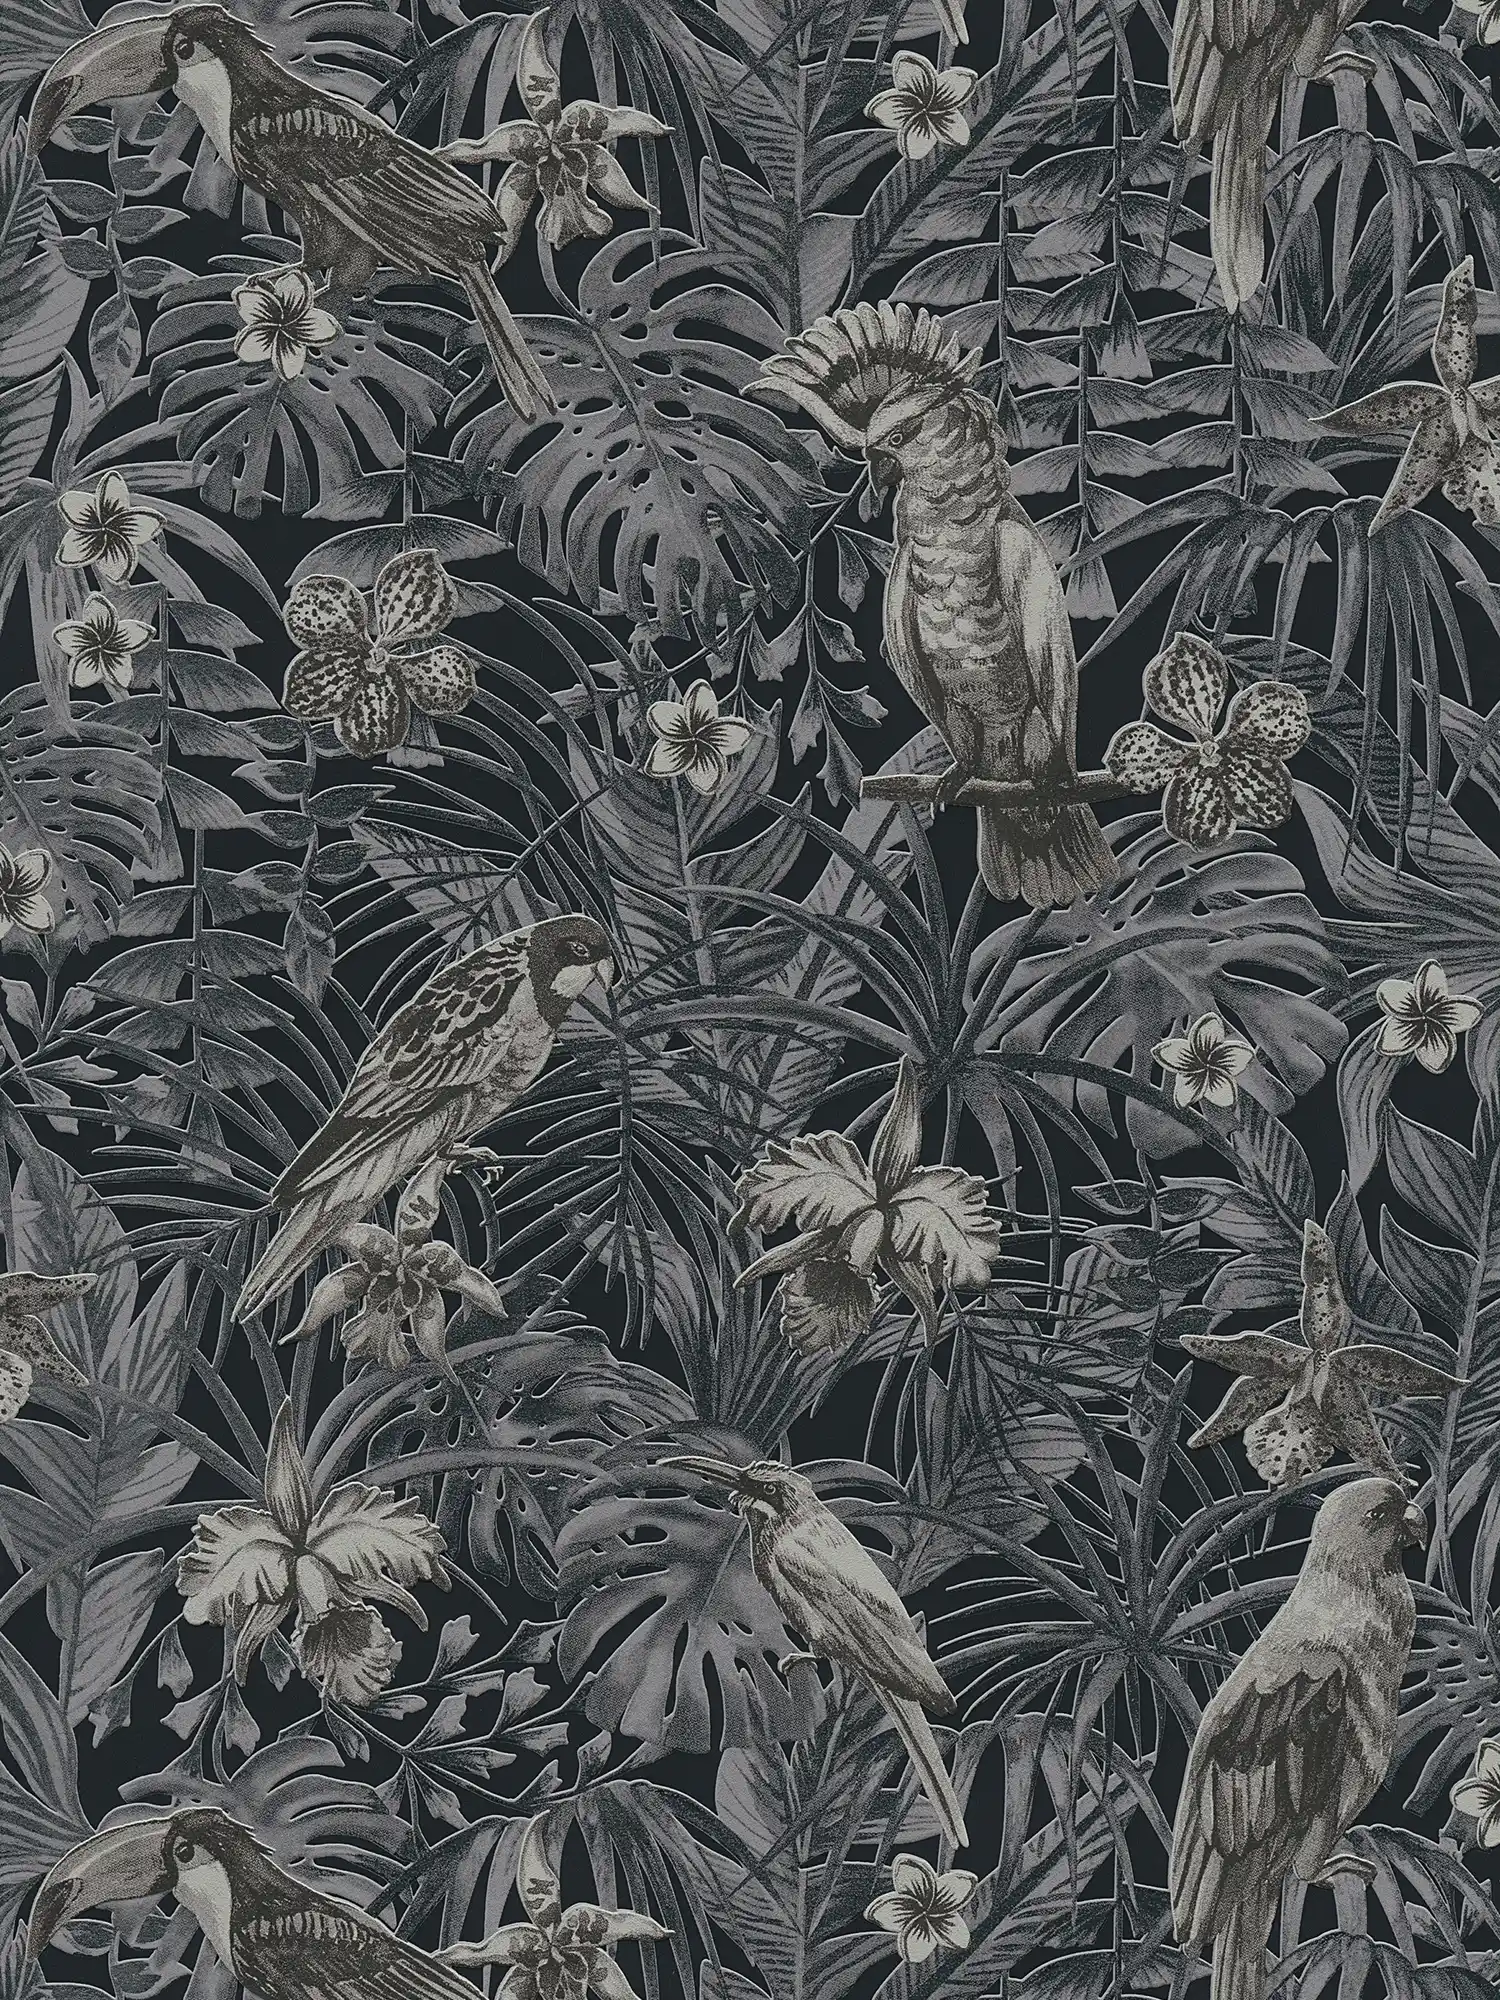         Exotische Tapete tropischen Vögel, Blüten & Blätter – Grau, Schwarz, Creme
    